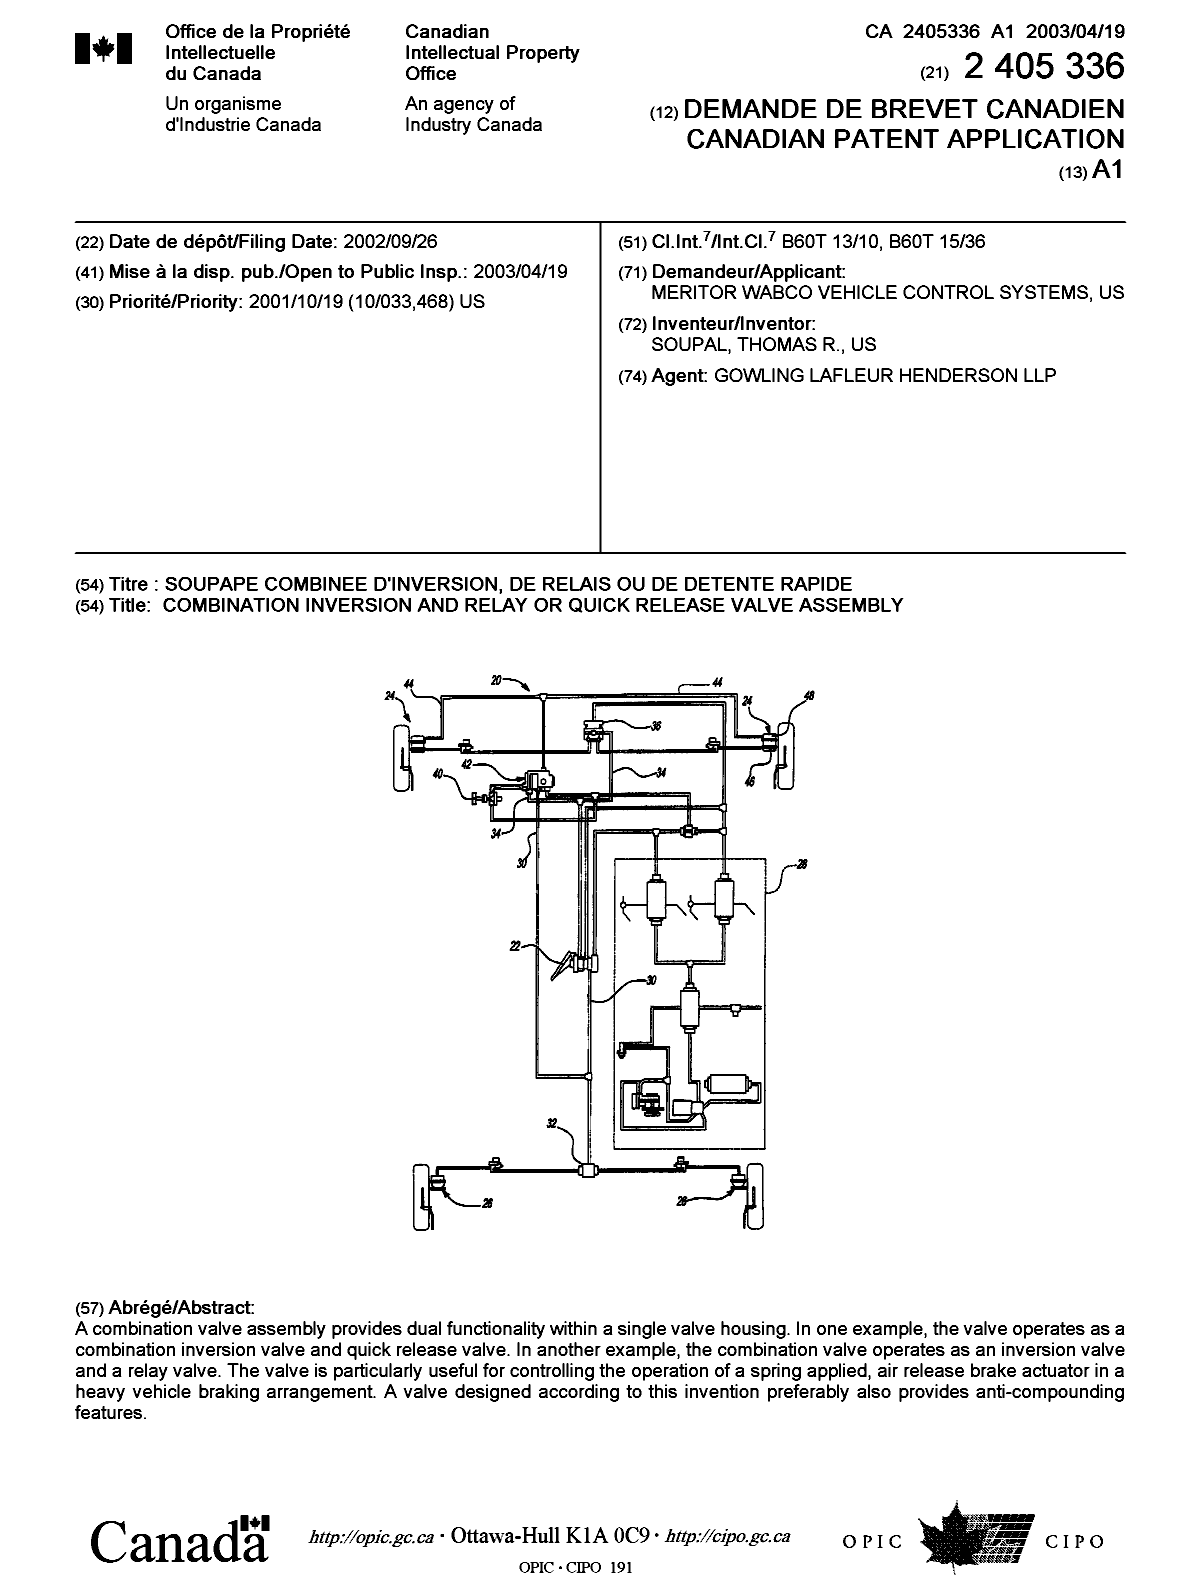 Document de brevet canadien 2405336. Page couverture 20030328. Image 1 de 1